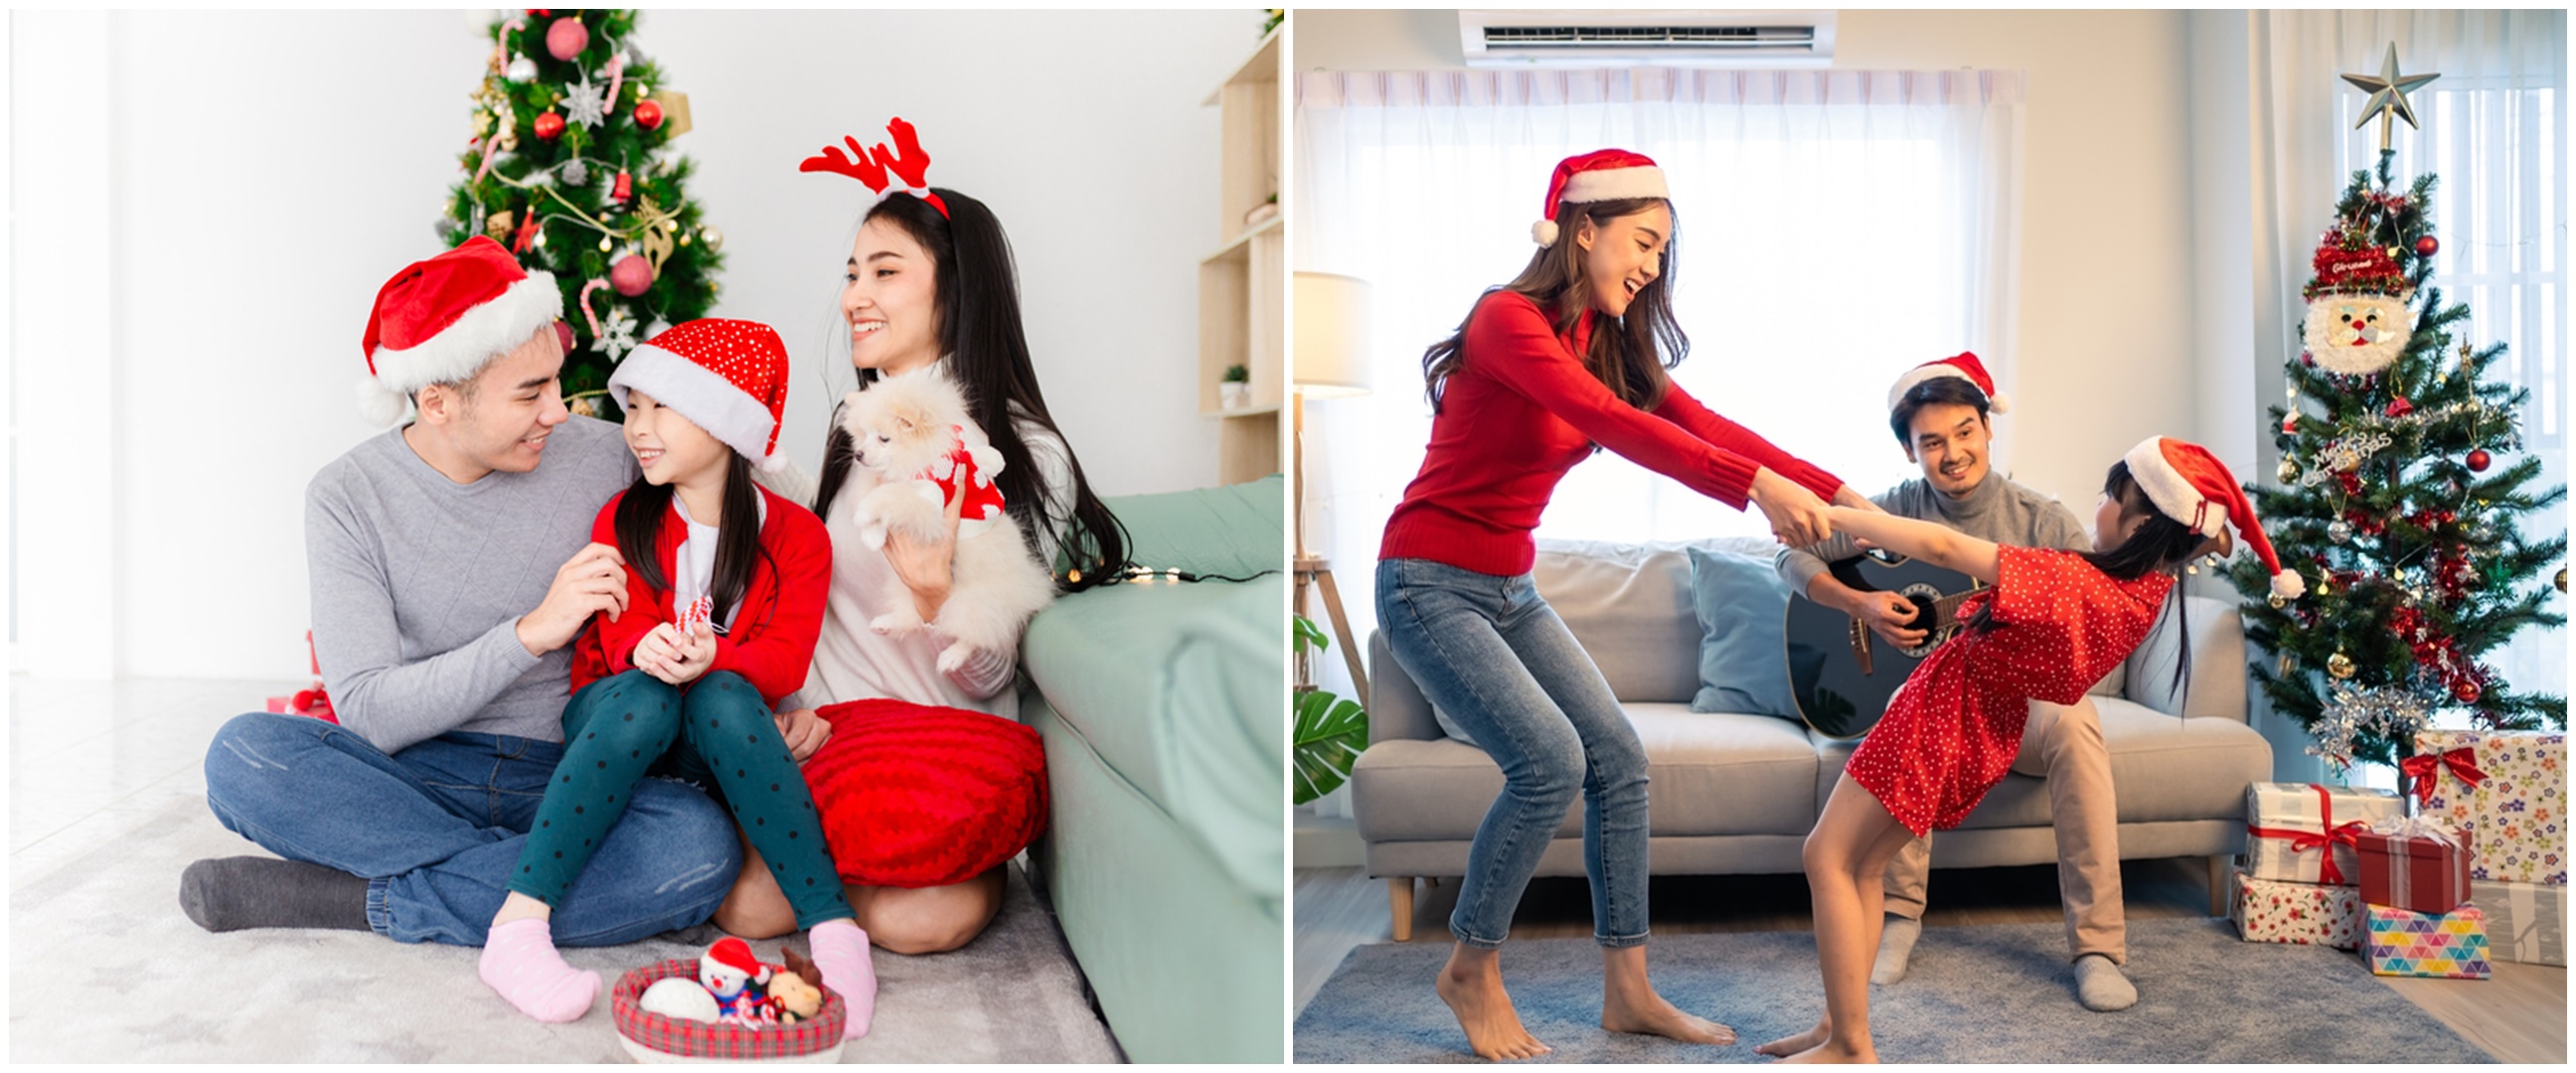 Si kecil bisa tersenyum tanpa paksaan, ini 5 ide pose foto rayakan Natal bersama keluarga di rumah